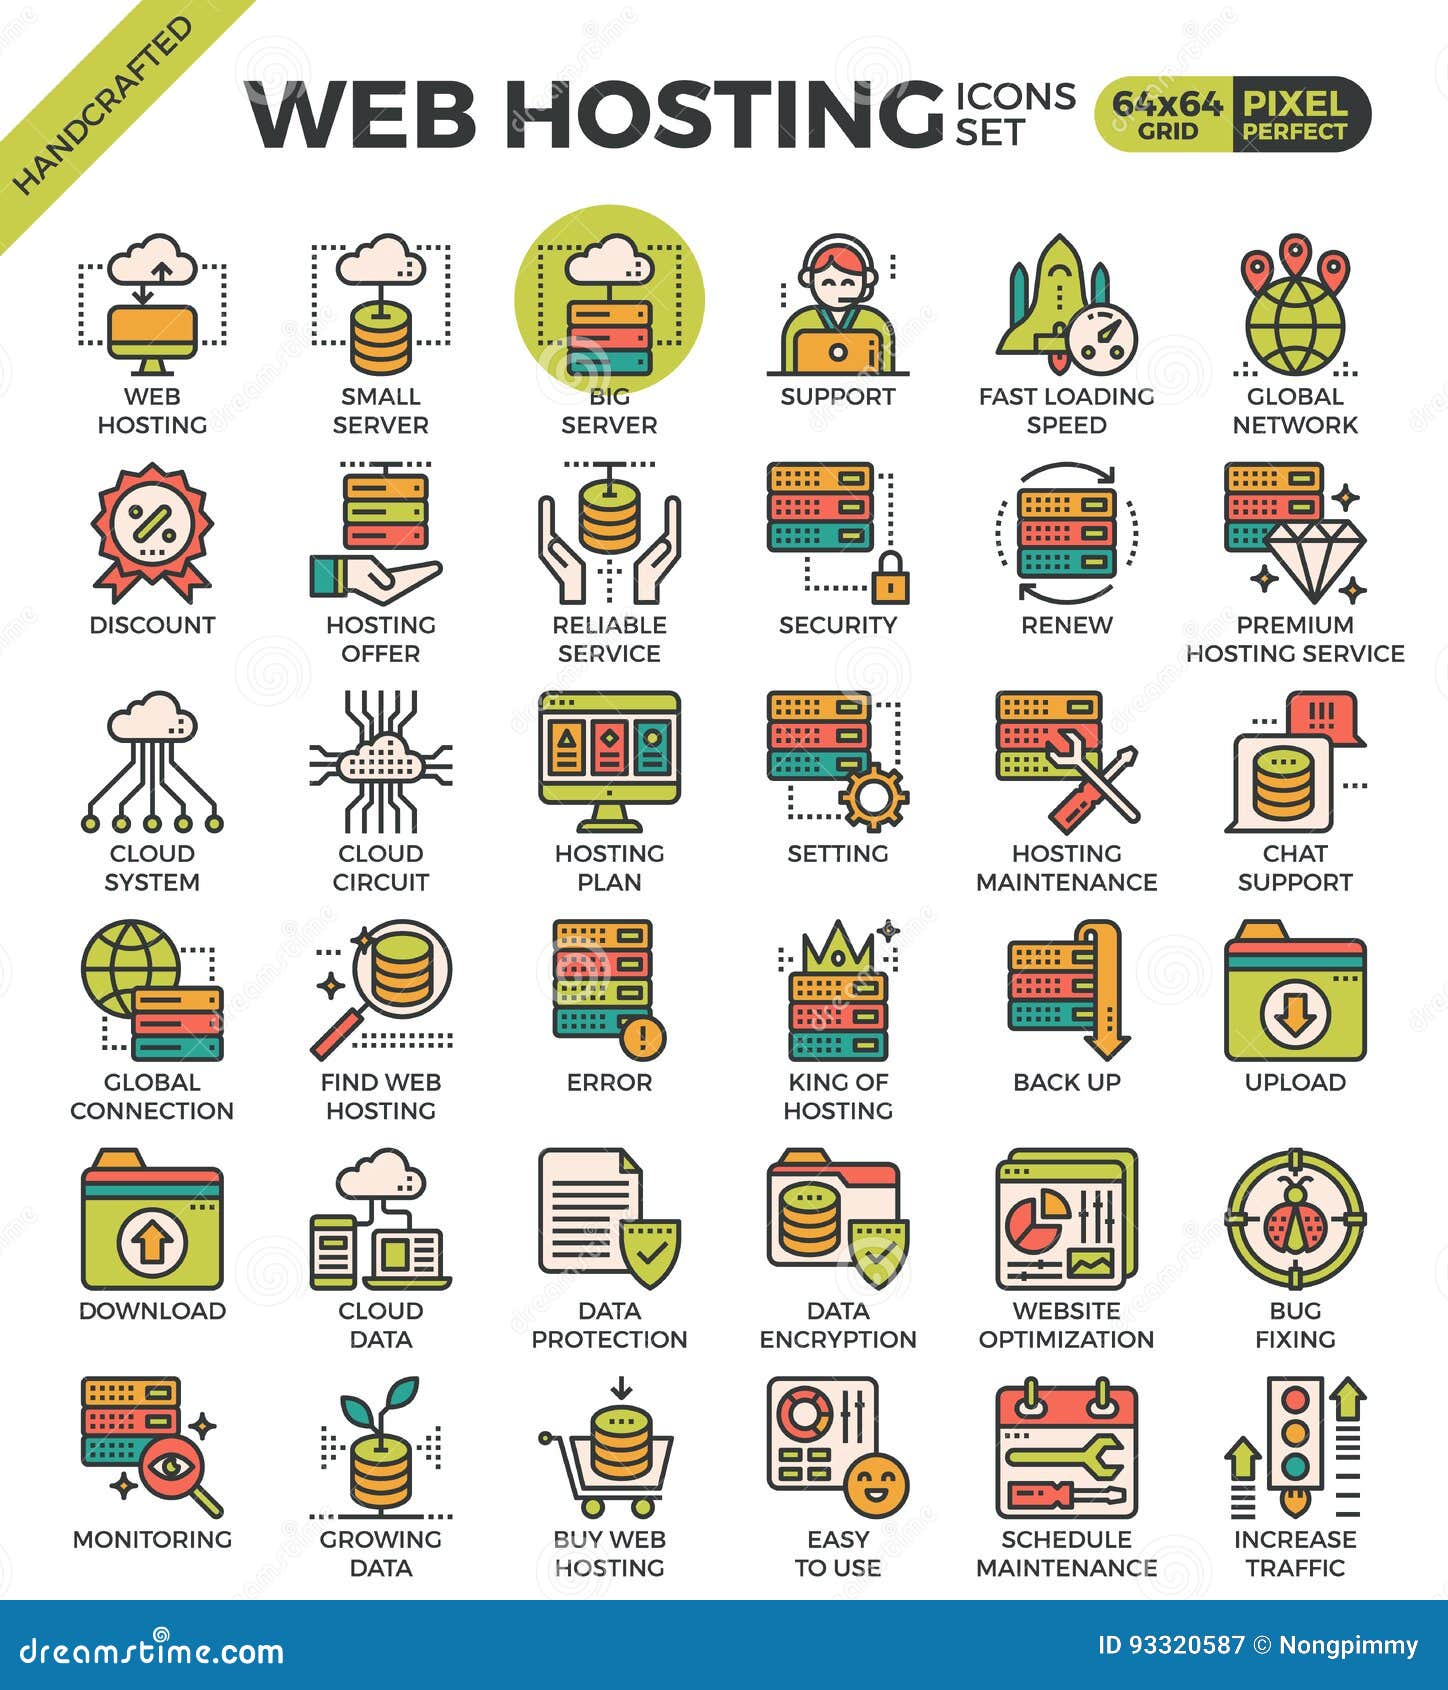 web hosting icons